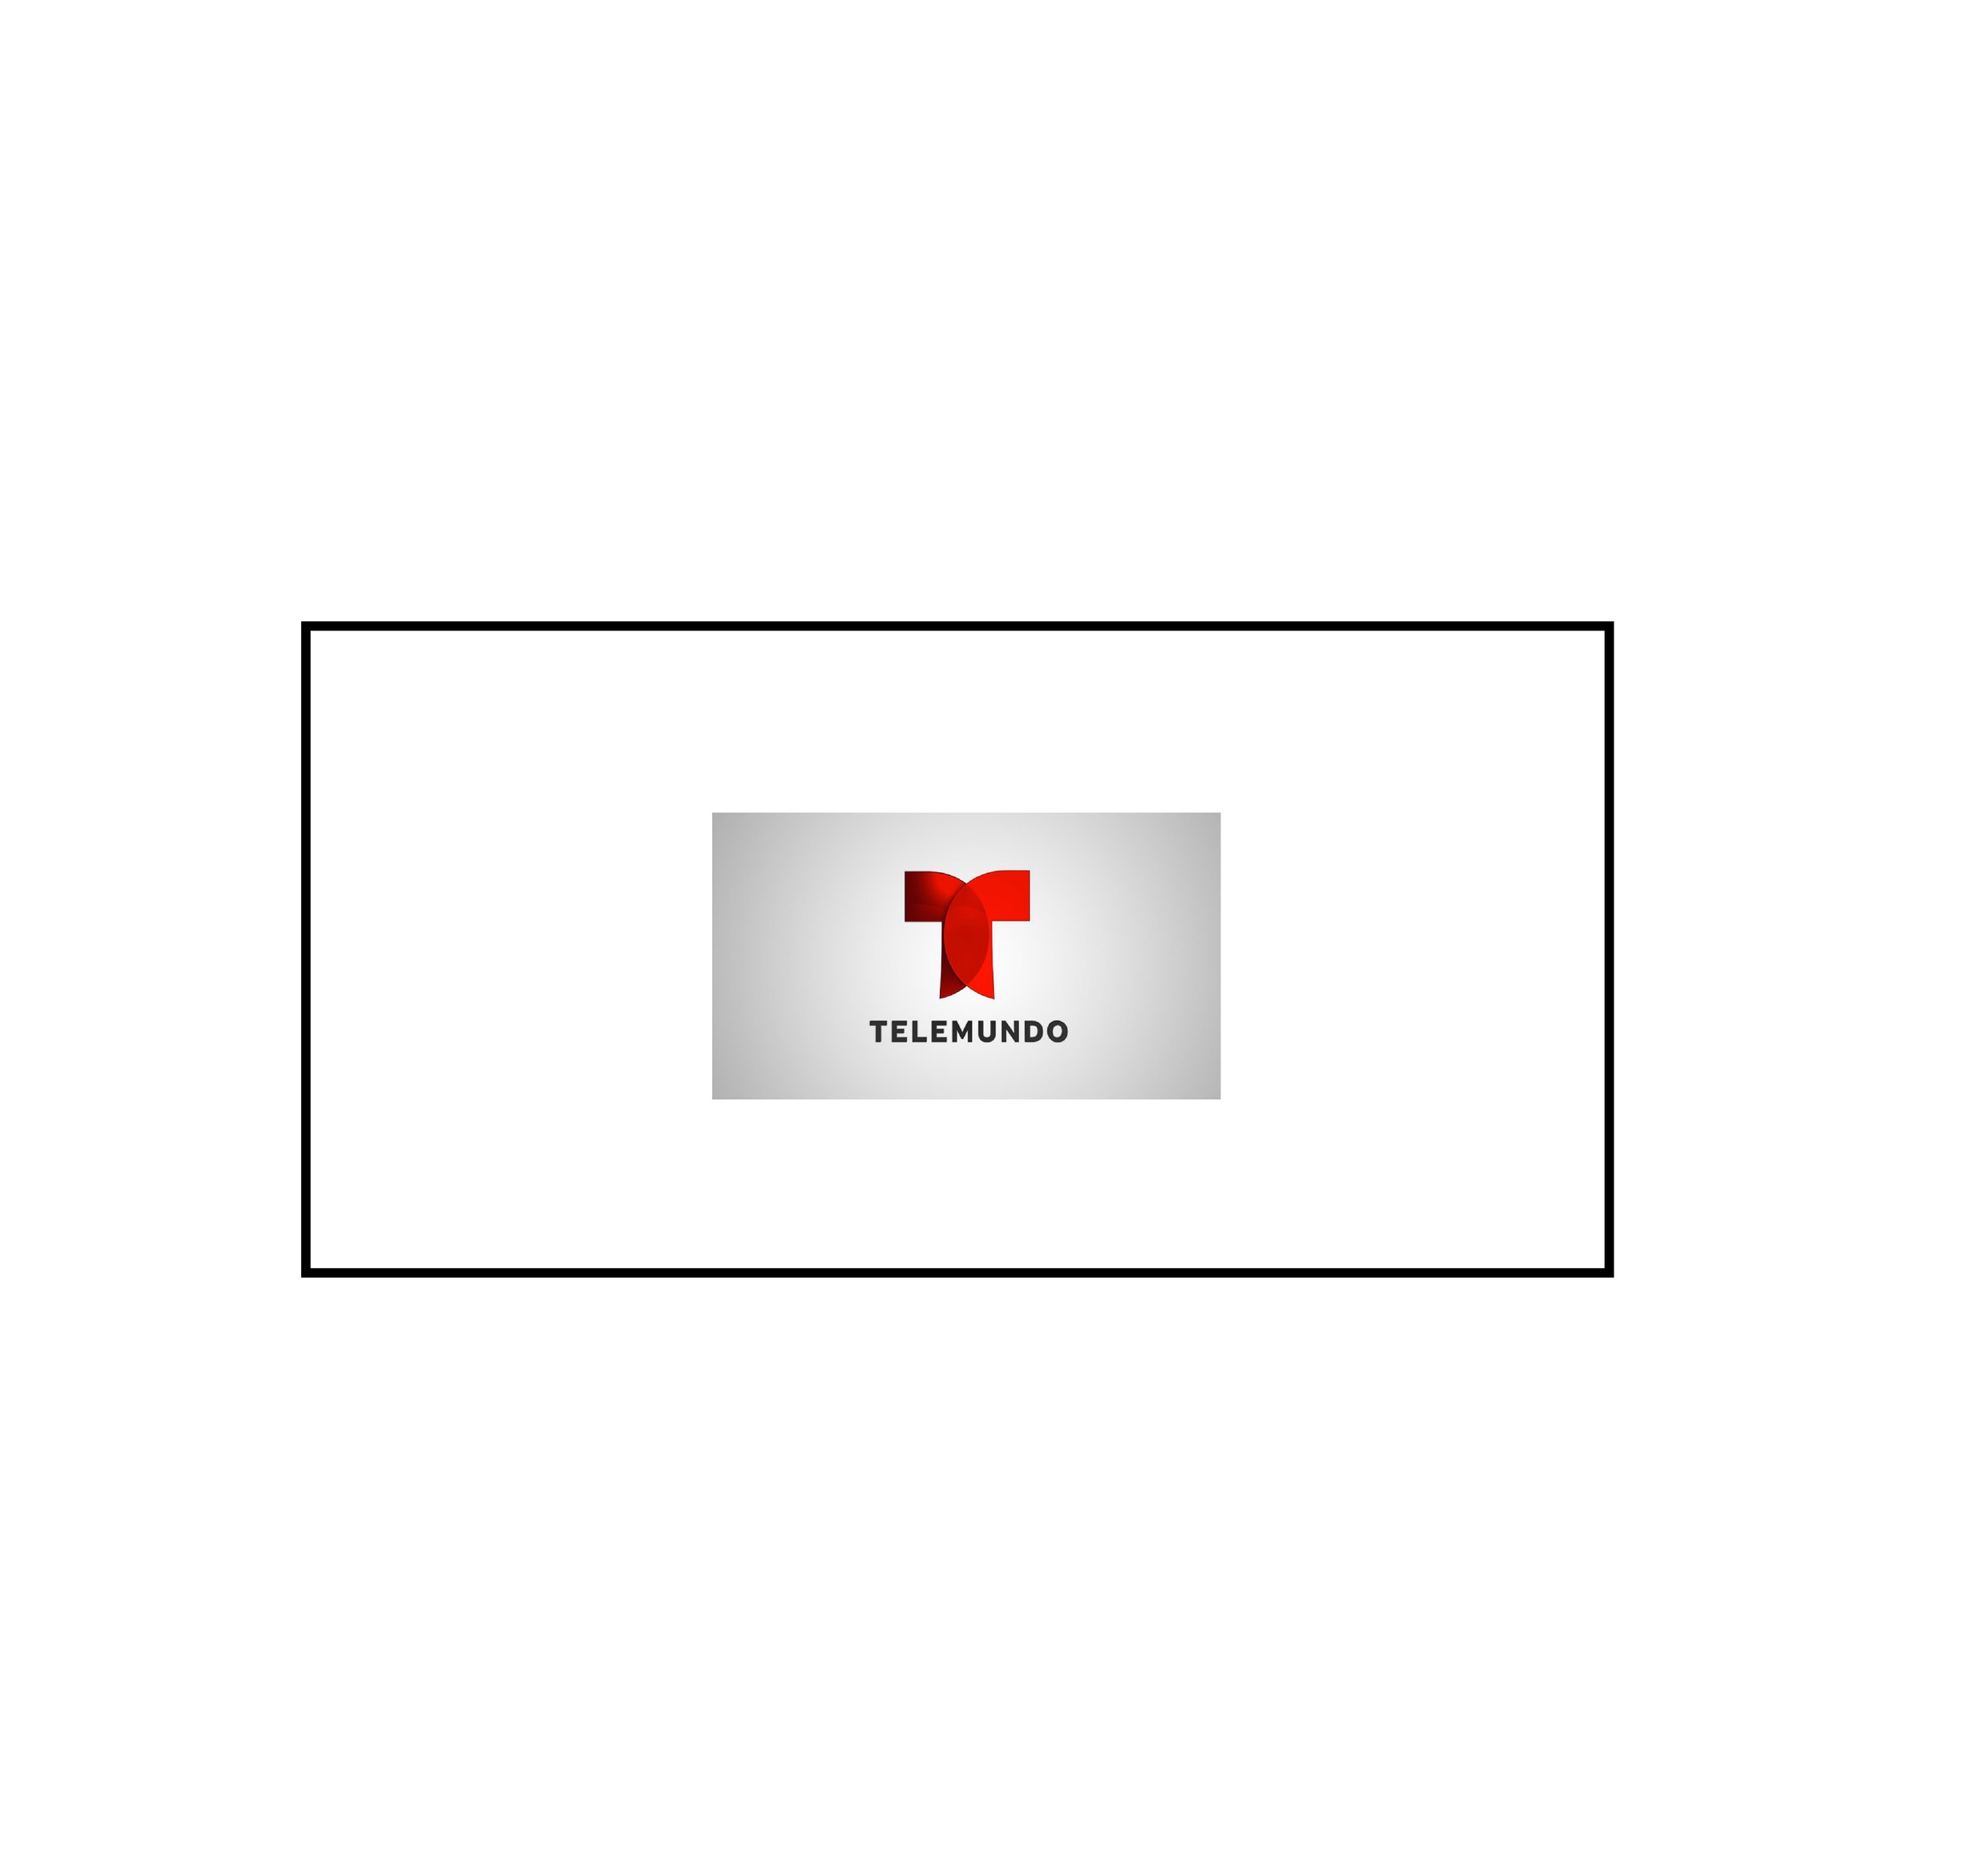 Voices-Telemundo Logo_TELEMUNDO.jpg